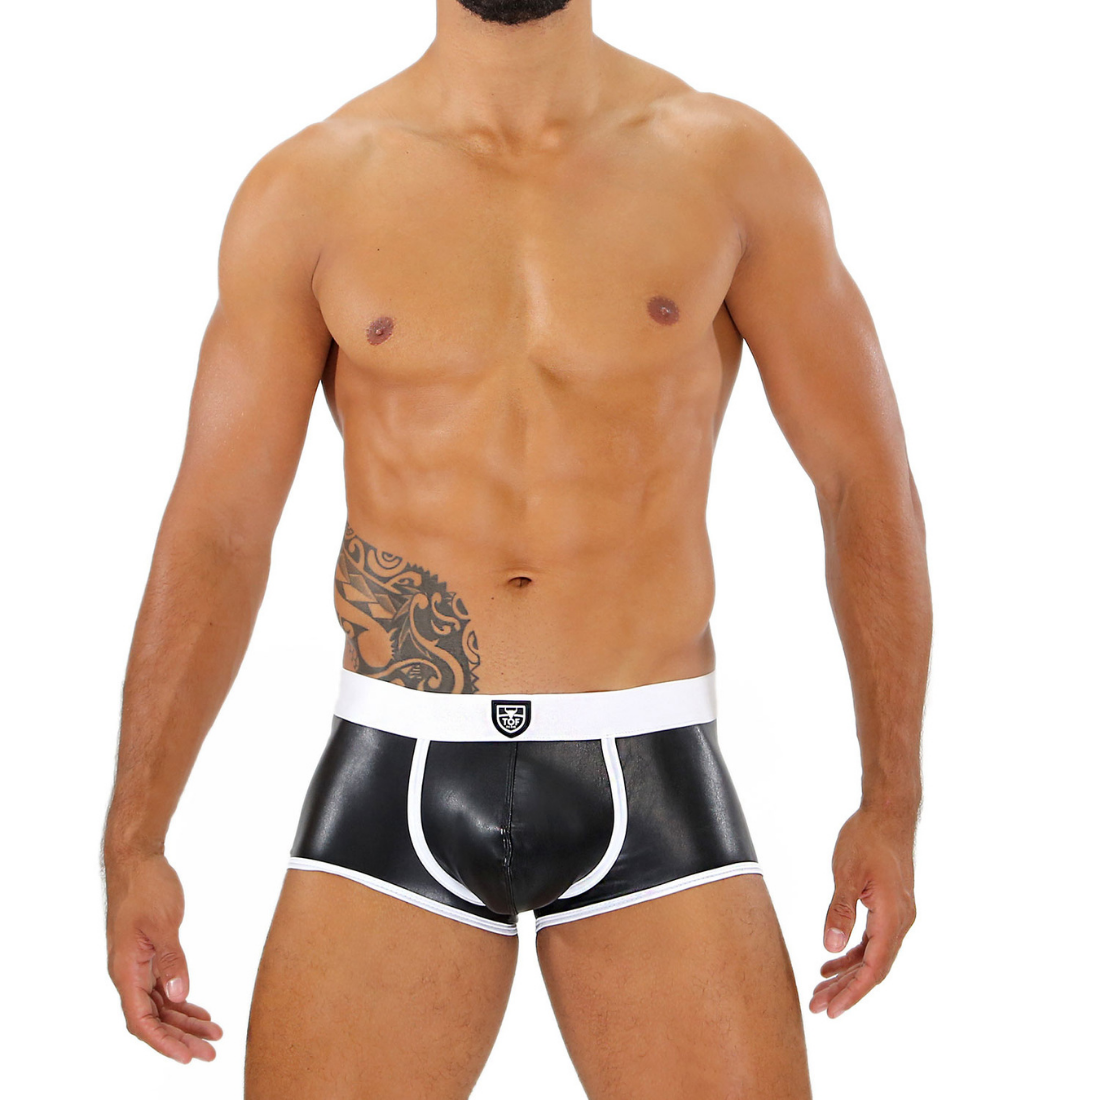 Zeer sexy zwarte vegan leather fetish boxer met contrasterende witte tailleband en biezen, ontworpen door Tof Paris en te koop bij Flavourez.